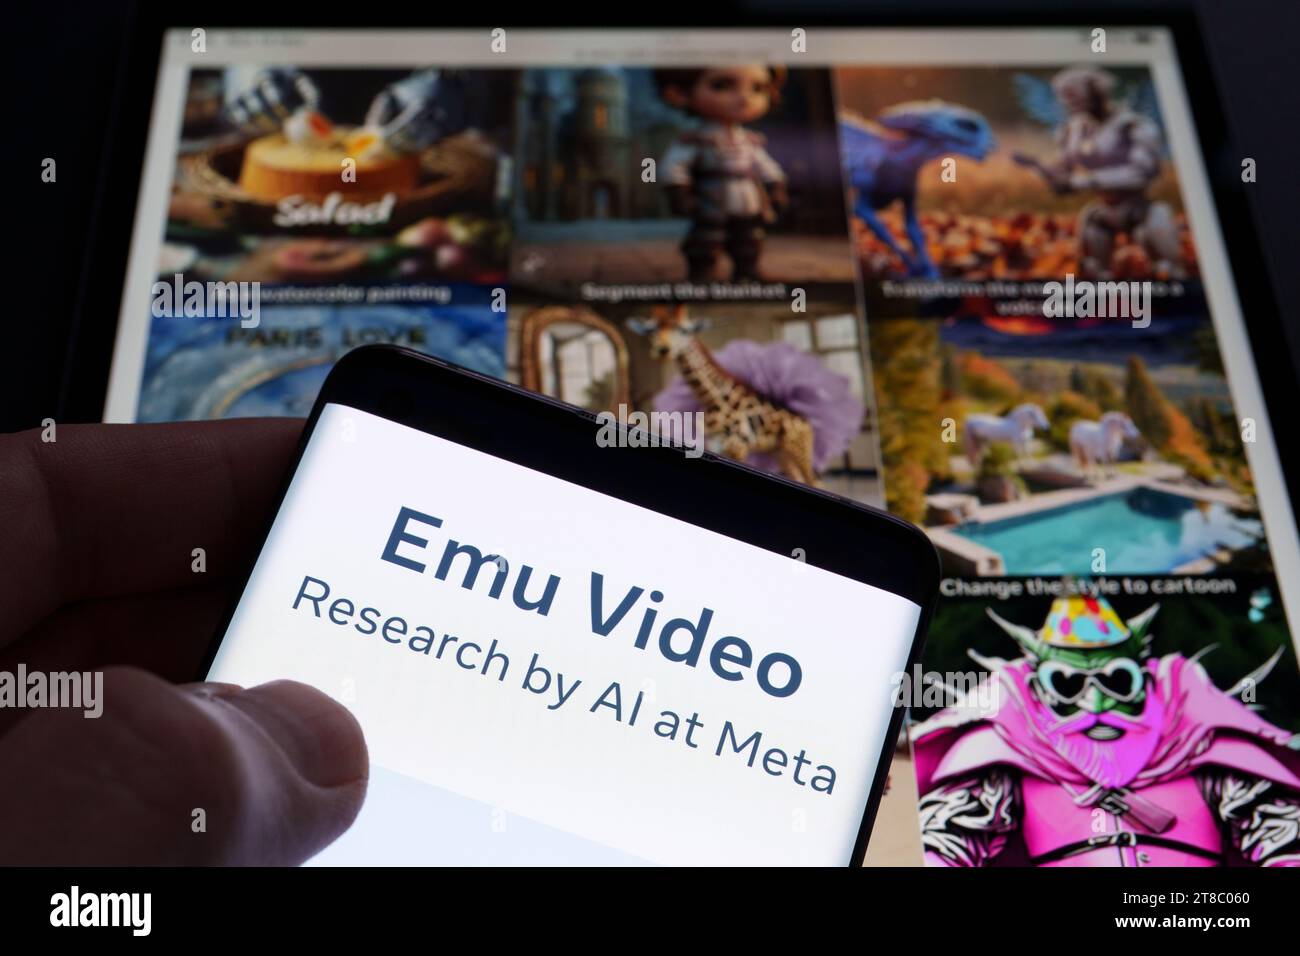 Emu Edit und Emu Video Tool Logo auf Smartphone und seine Beispiele im Hintergrund. Neues KI-Bild- und Videogenerierungs- und -bearbeitungstool von Meta. Stockfoto